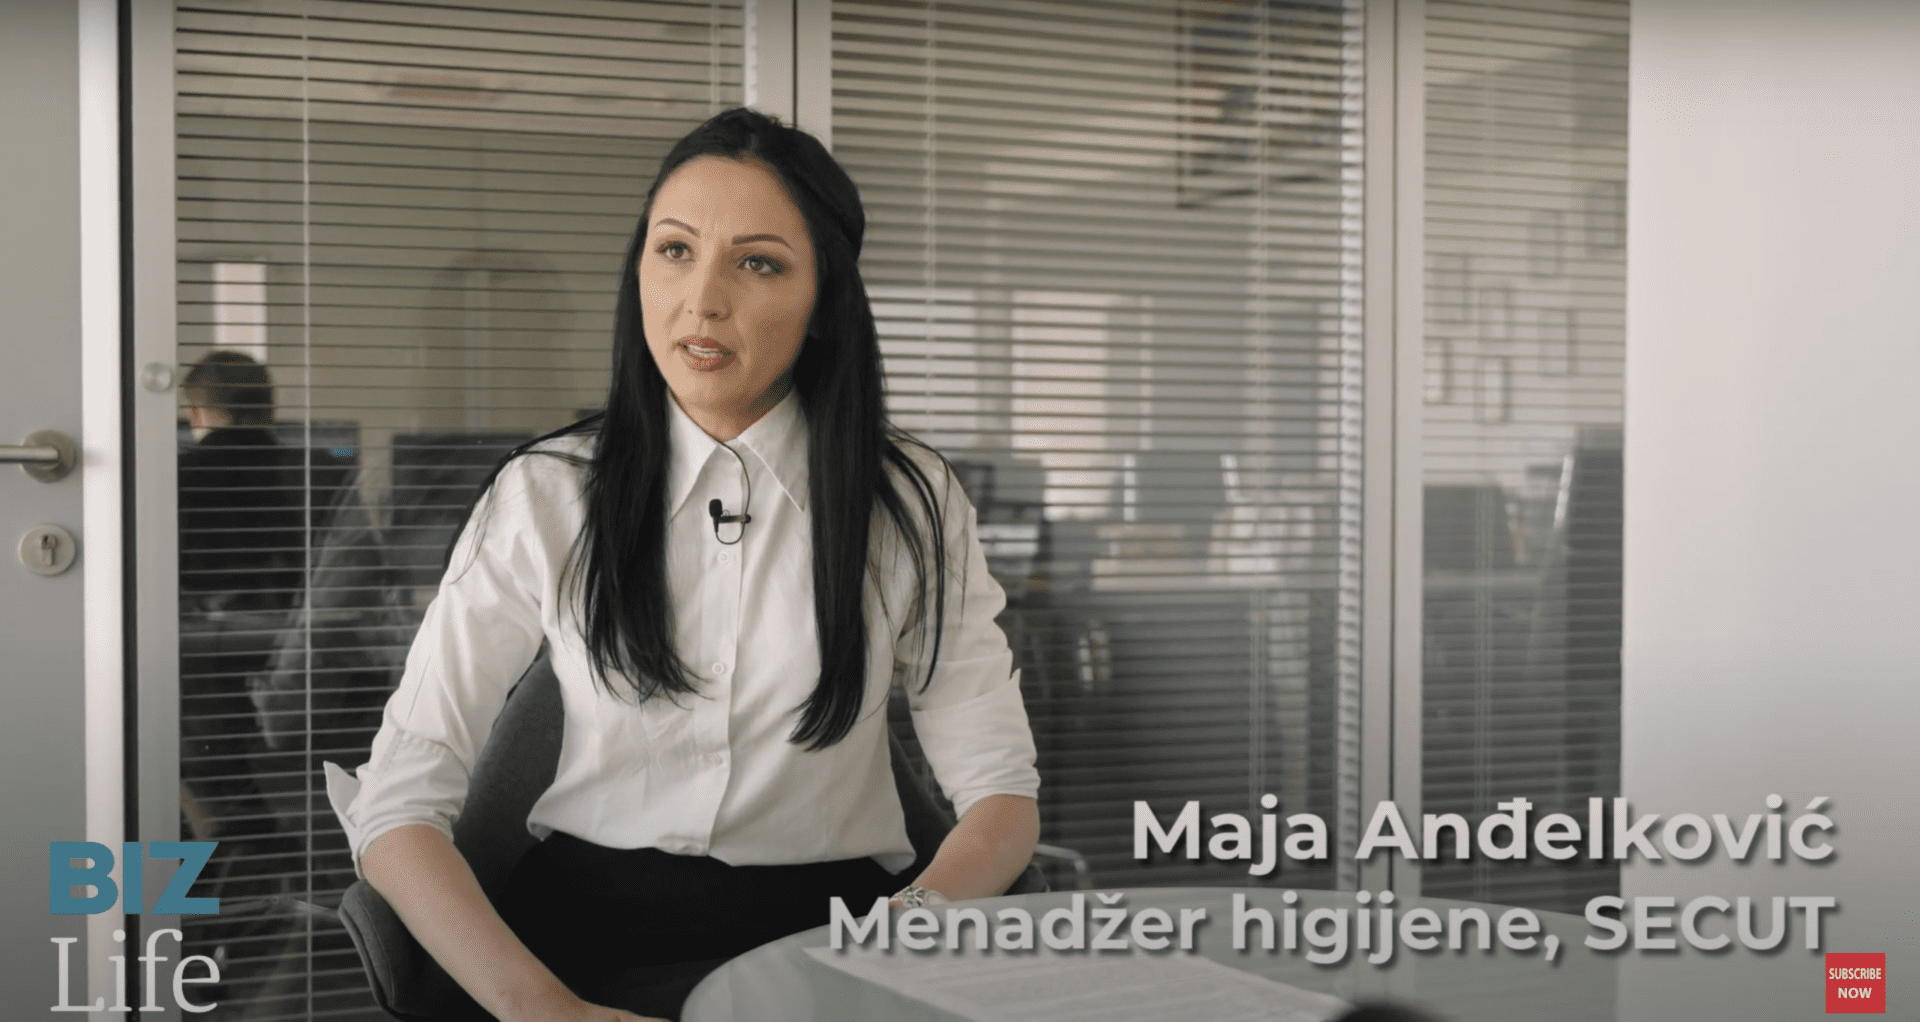 Menadžer higijene u kompaniji Secut, Maja Anđelković